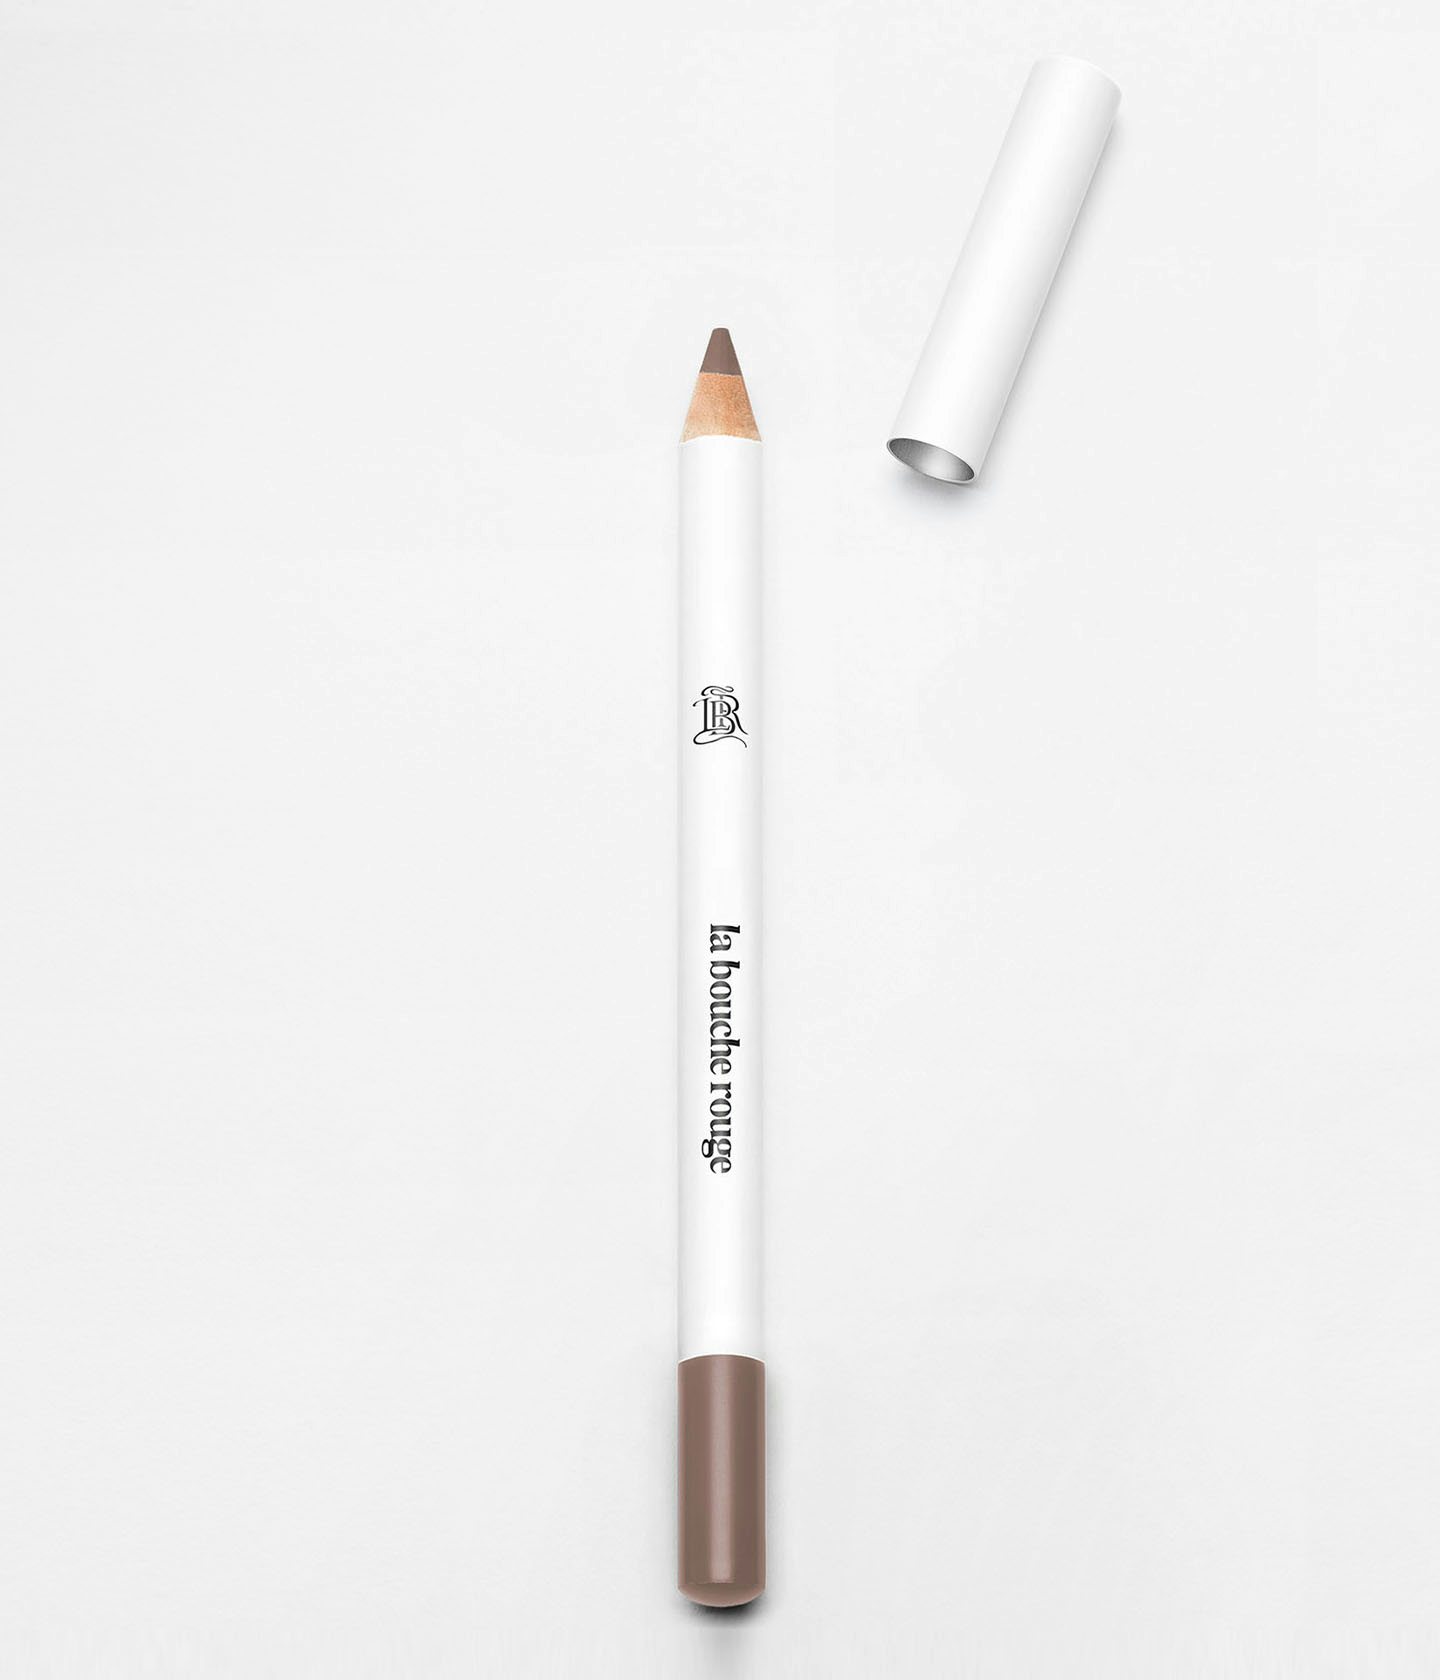 Découvrez Le crayon sourcils brun clair sur le Site Officiel de La bouche rouge, Paris. Pour une beauté qui prend soin de vous, tout en protégeant la planète. Repenser, recharger, recycler.